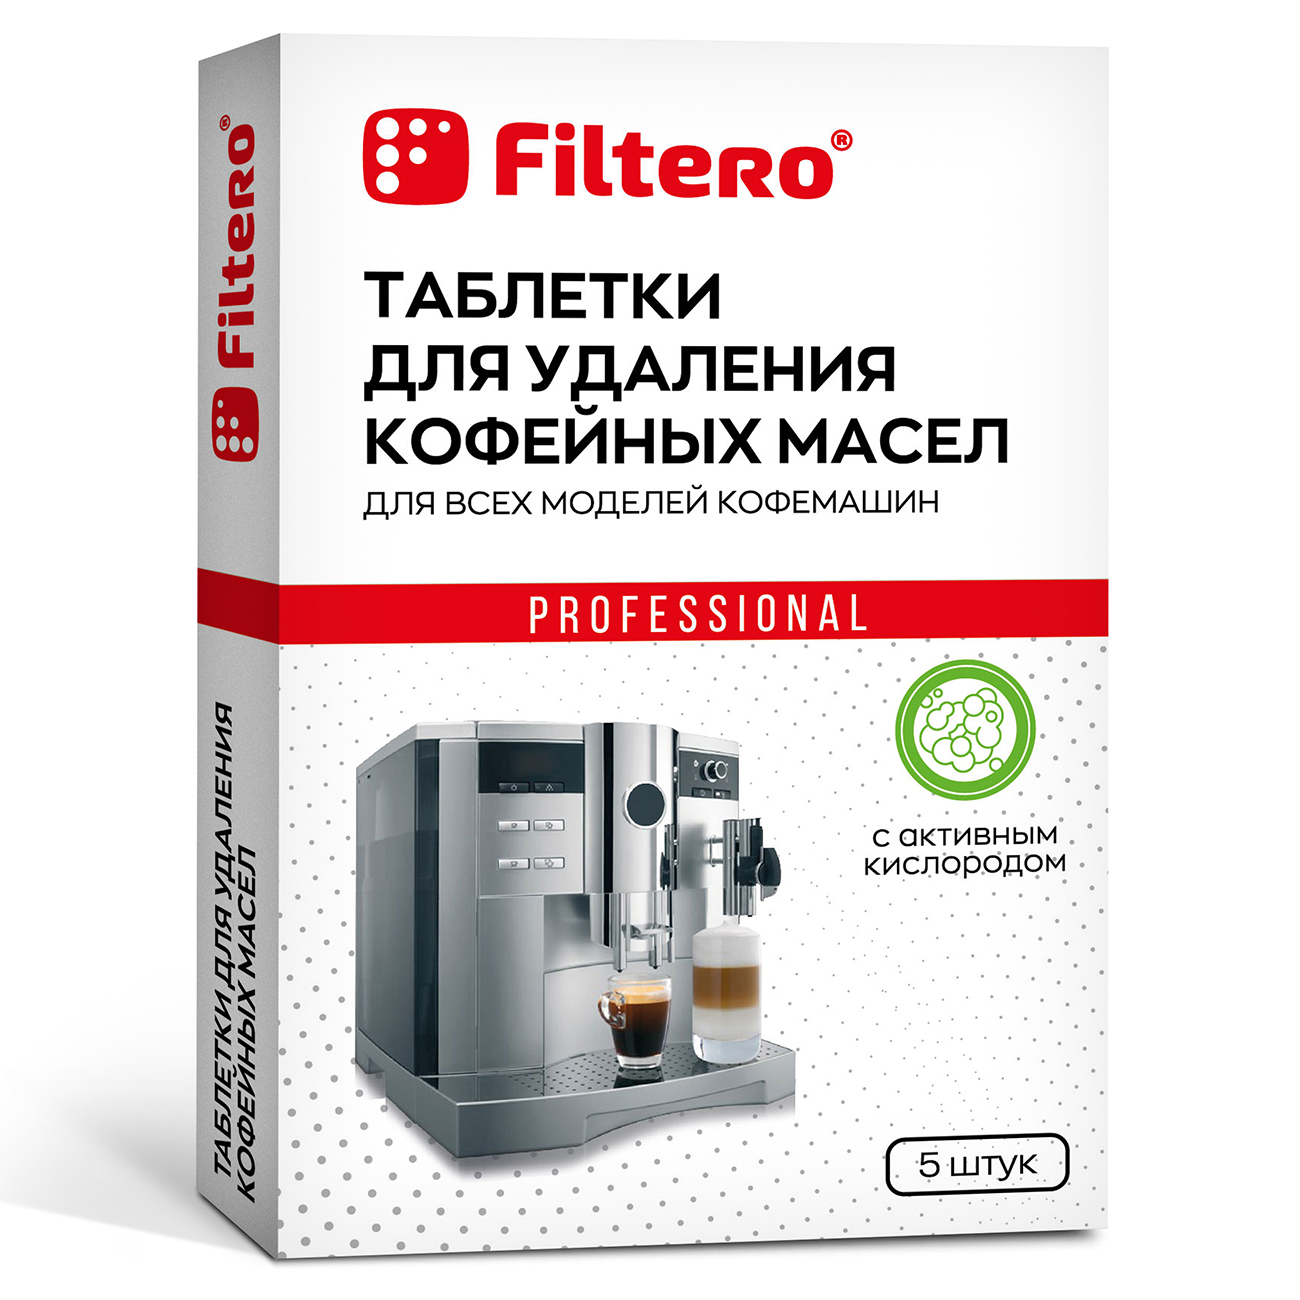 Таблетки для удаления кофейных масел Filtero 4 шт таблетки от кофейных масел для кофемашин filtero арт 613